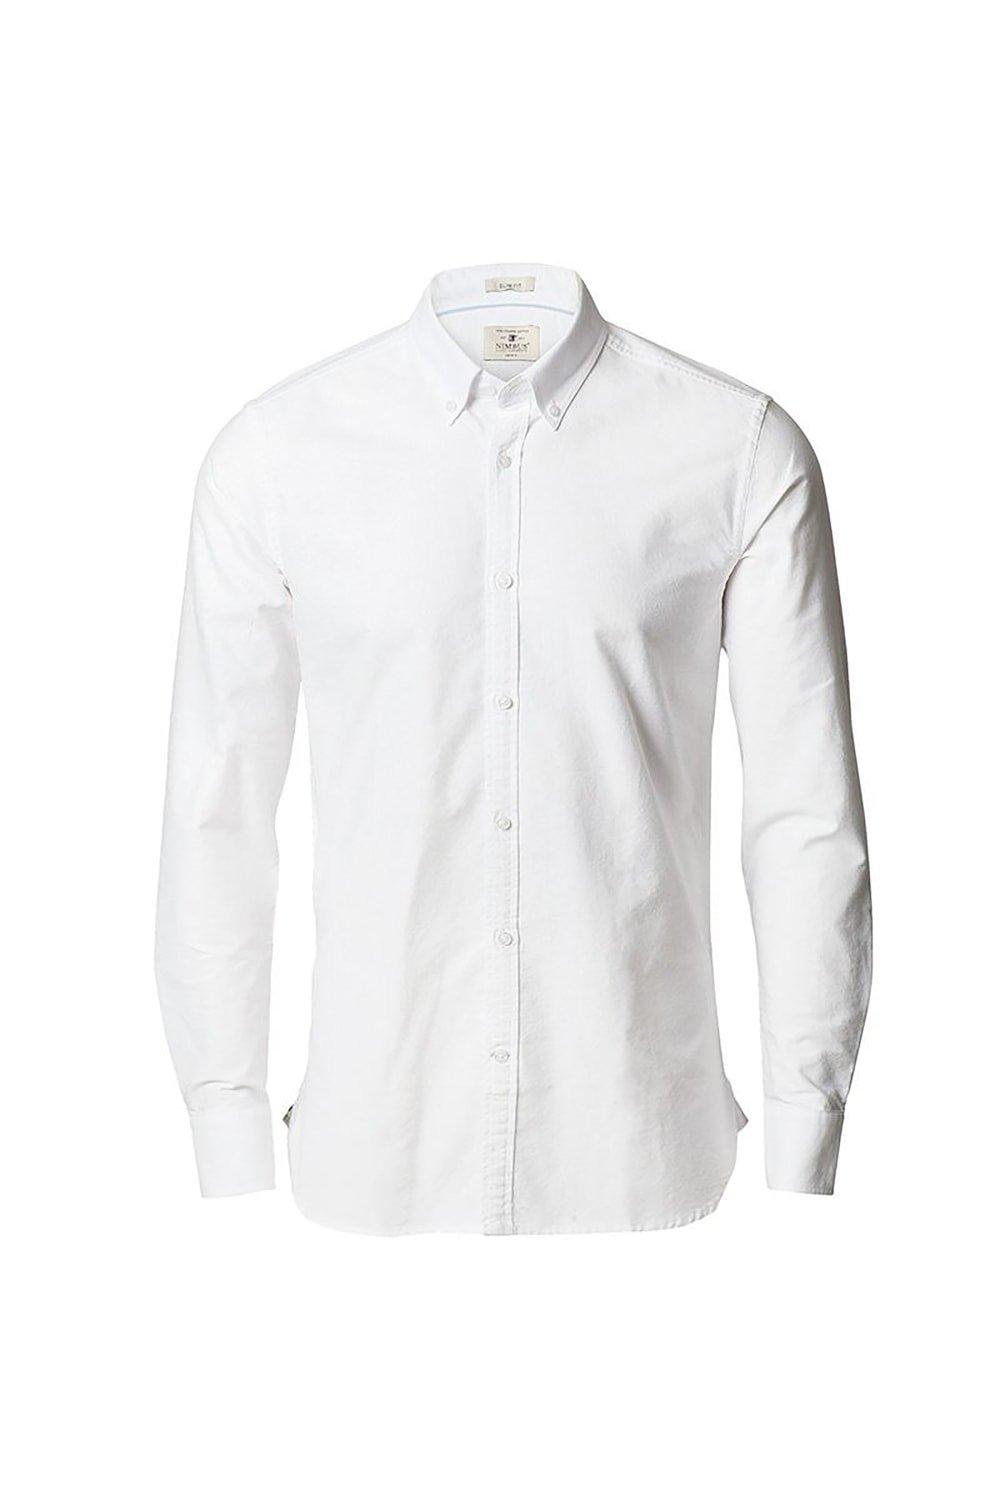 Оксфордская рубашка узкого кроя с длинными рукавами Rochester Nimbus, белый кофта на пуговицах 44 размер